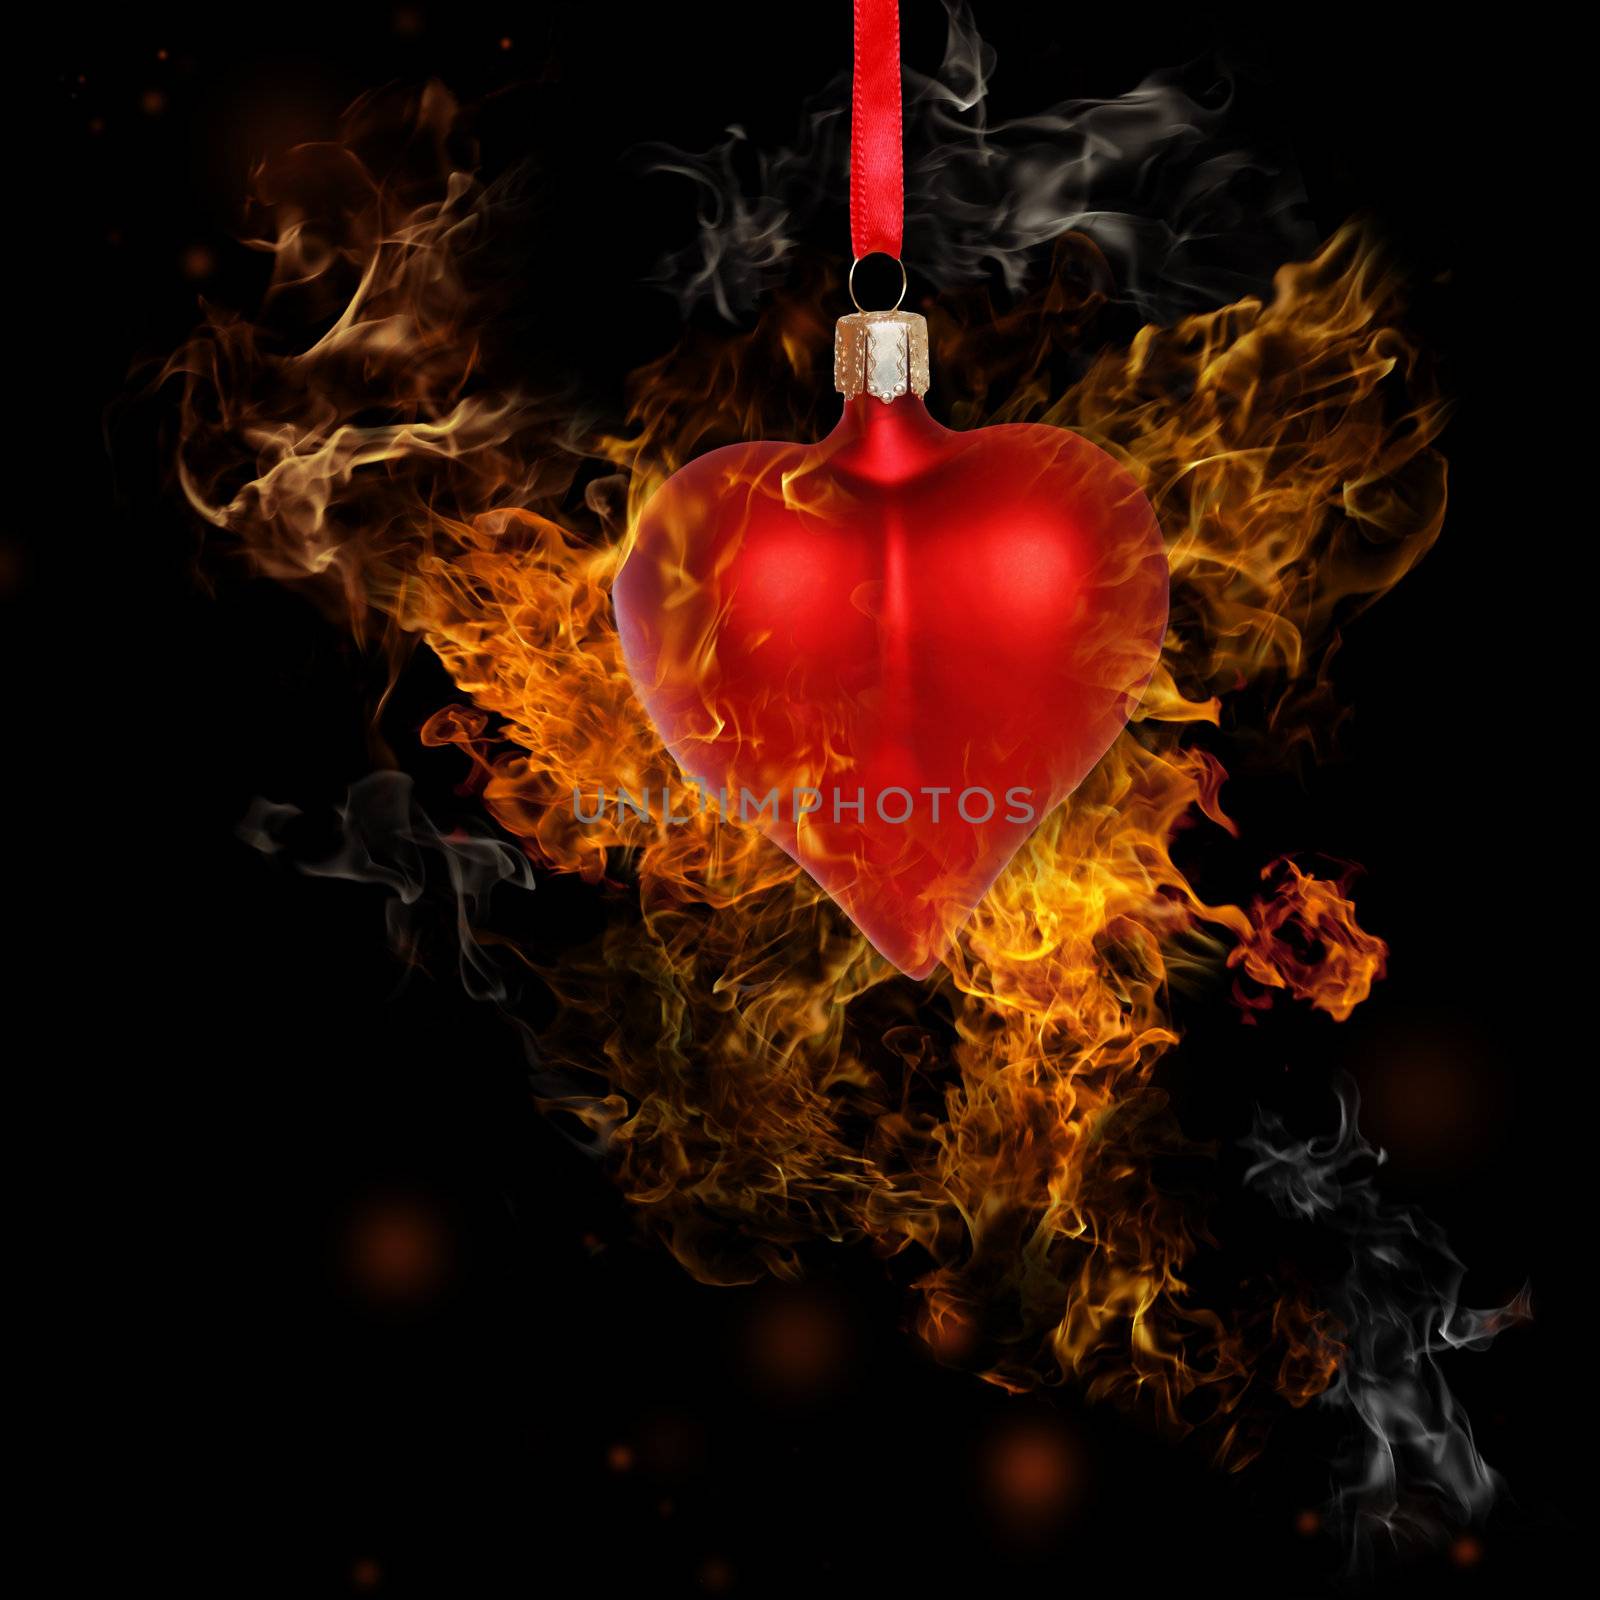 Fire Heart Bauble by melpomene